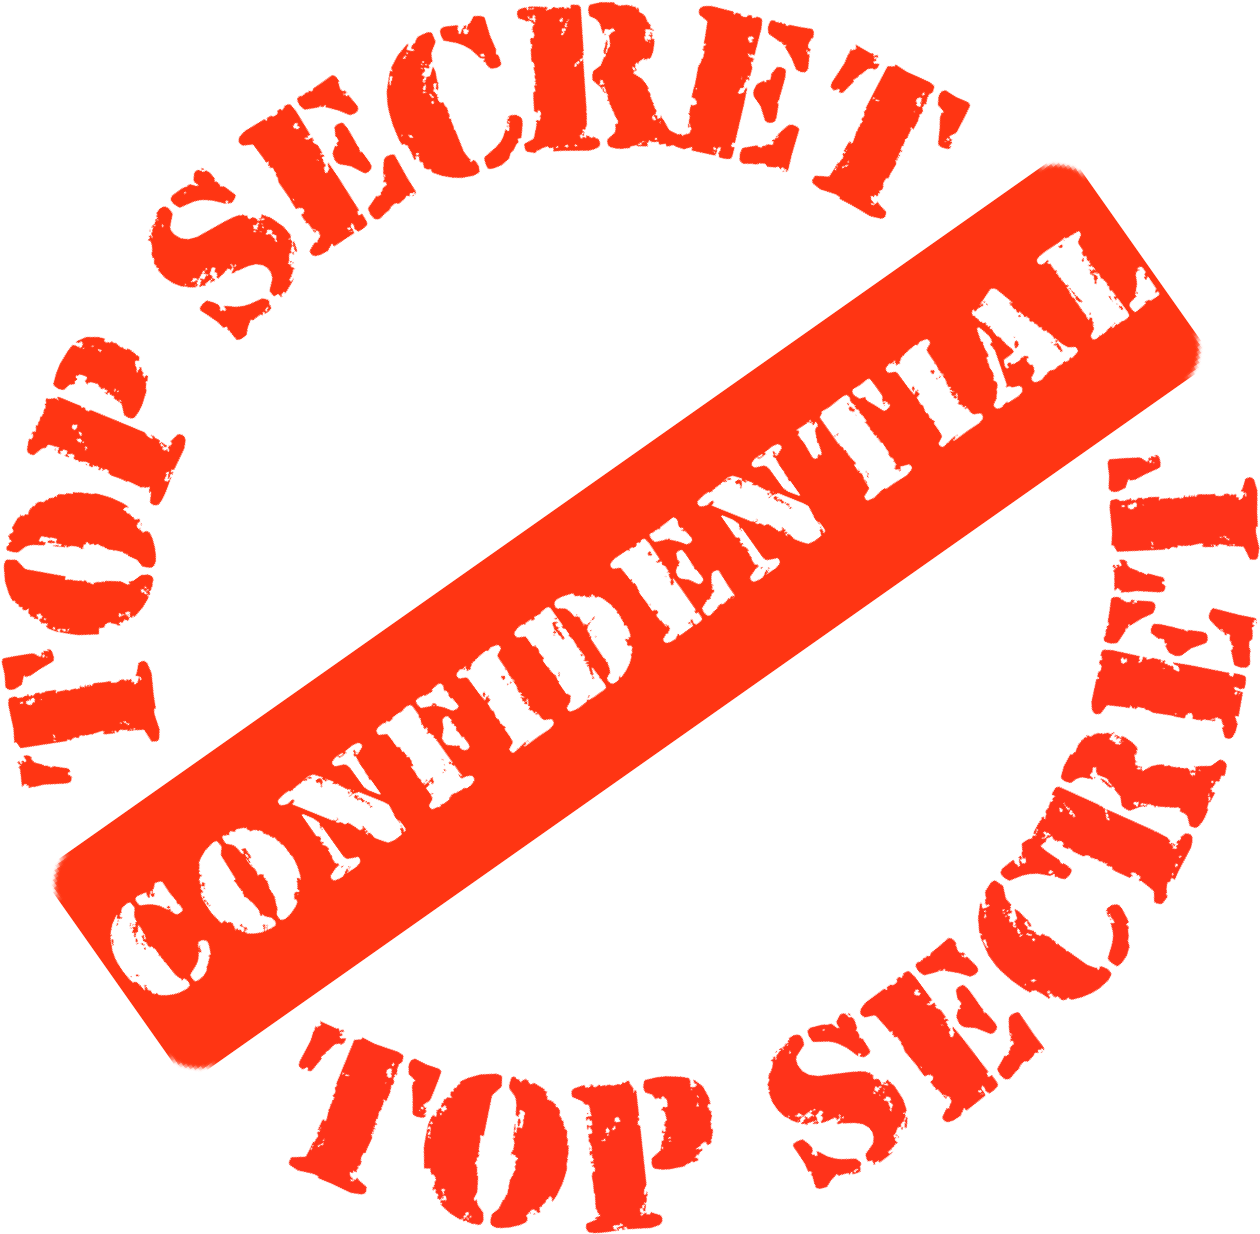 Top Secret Confidential Stamp